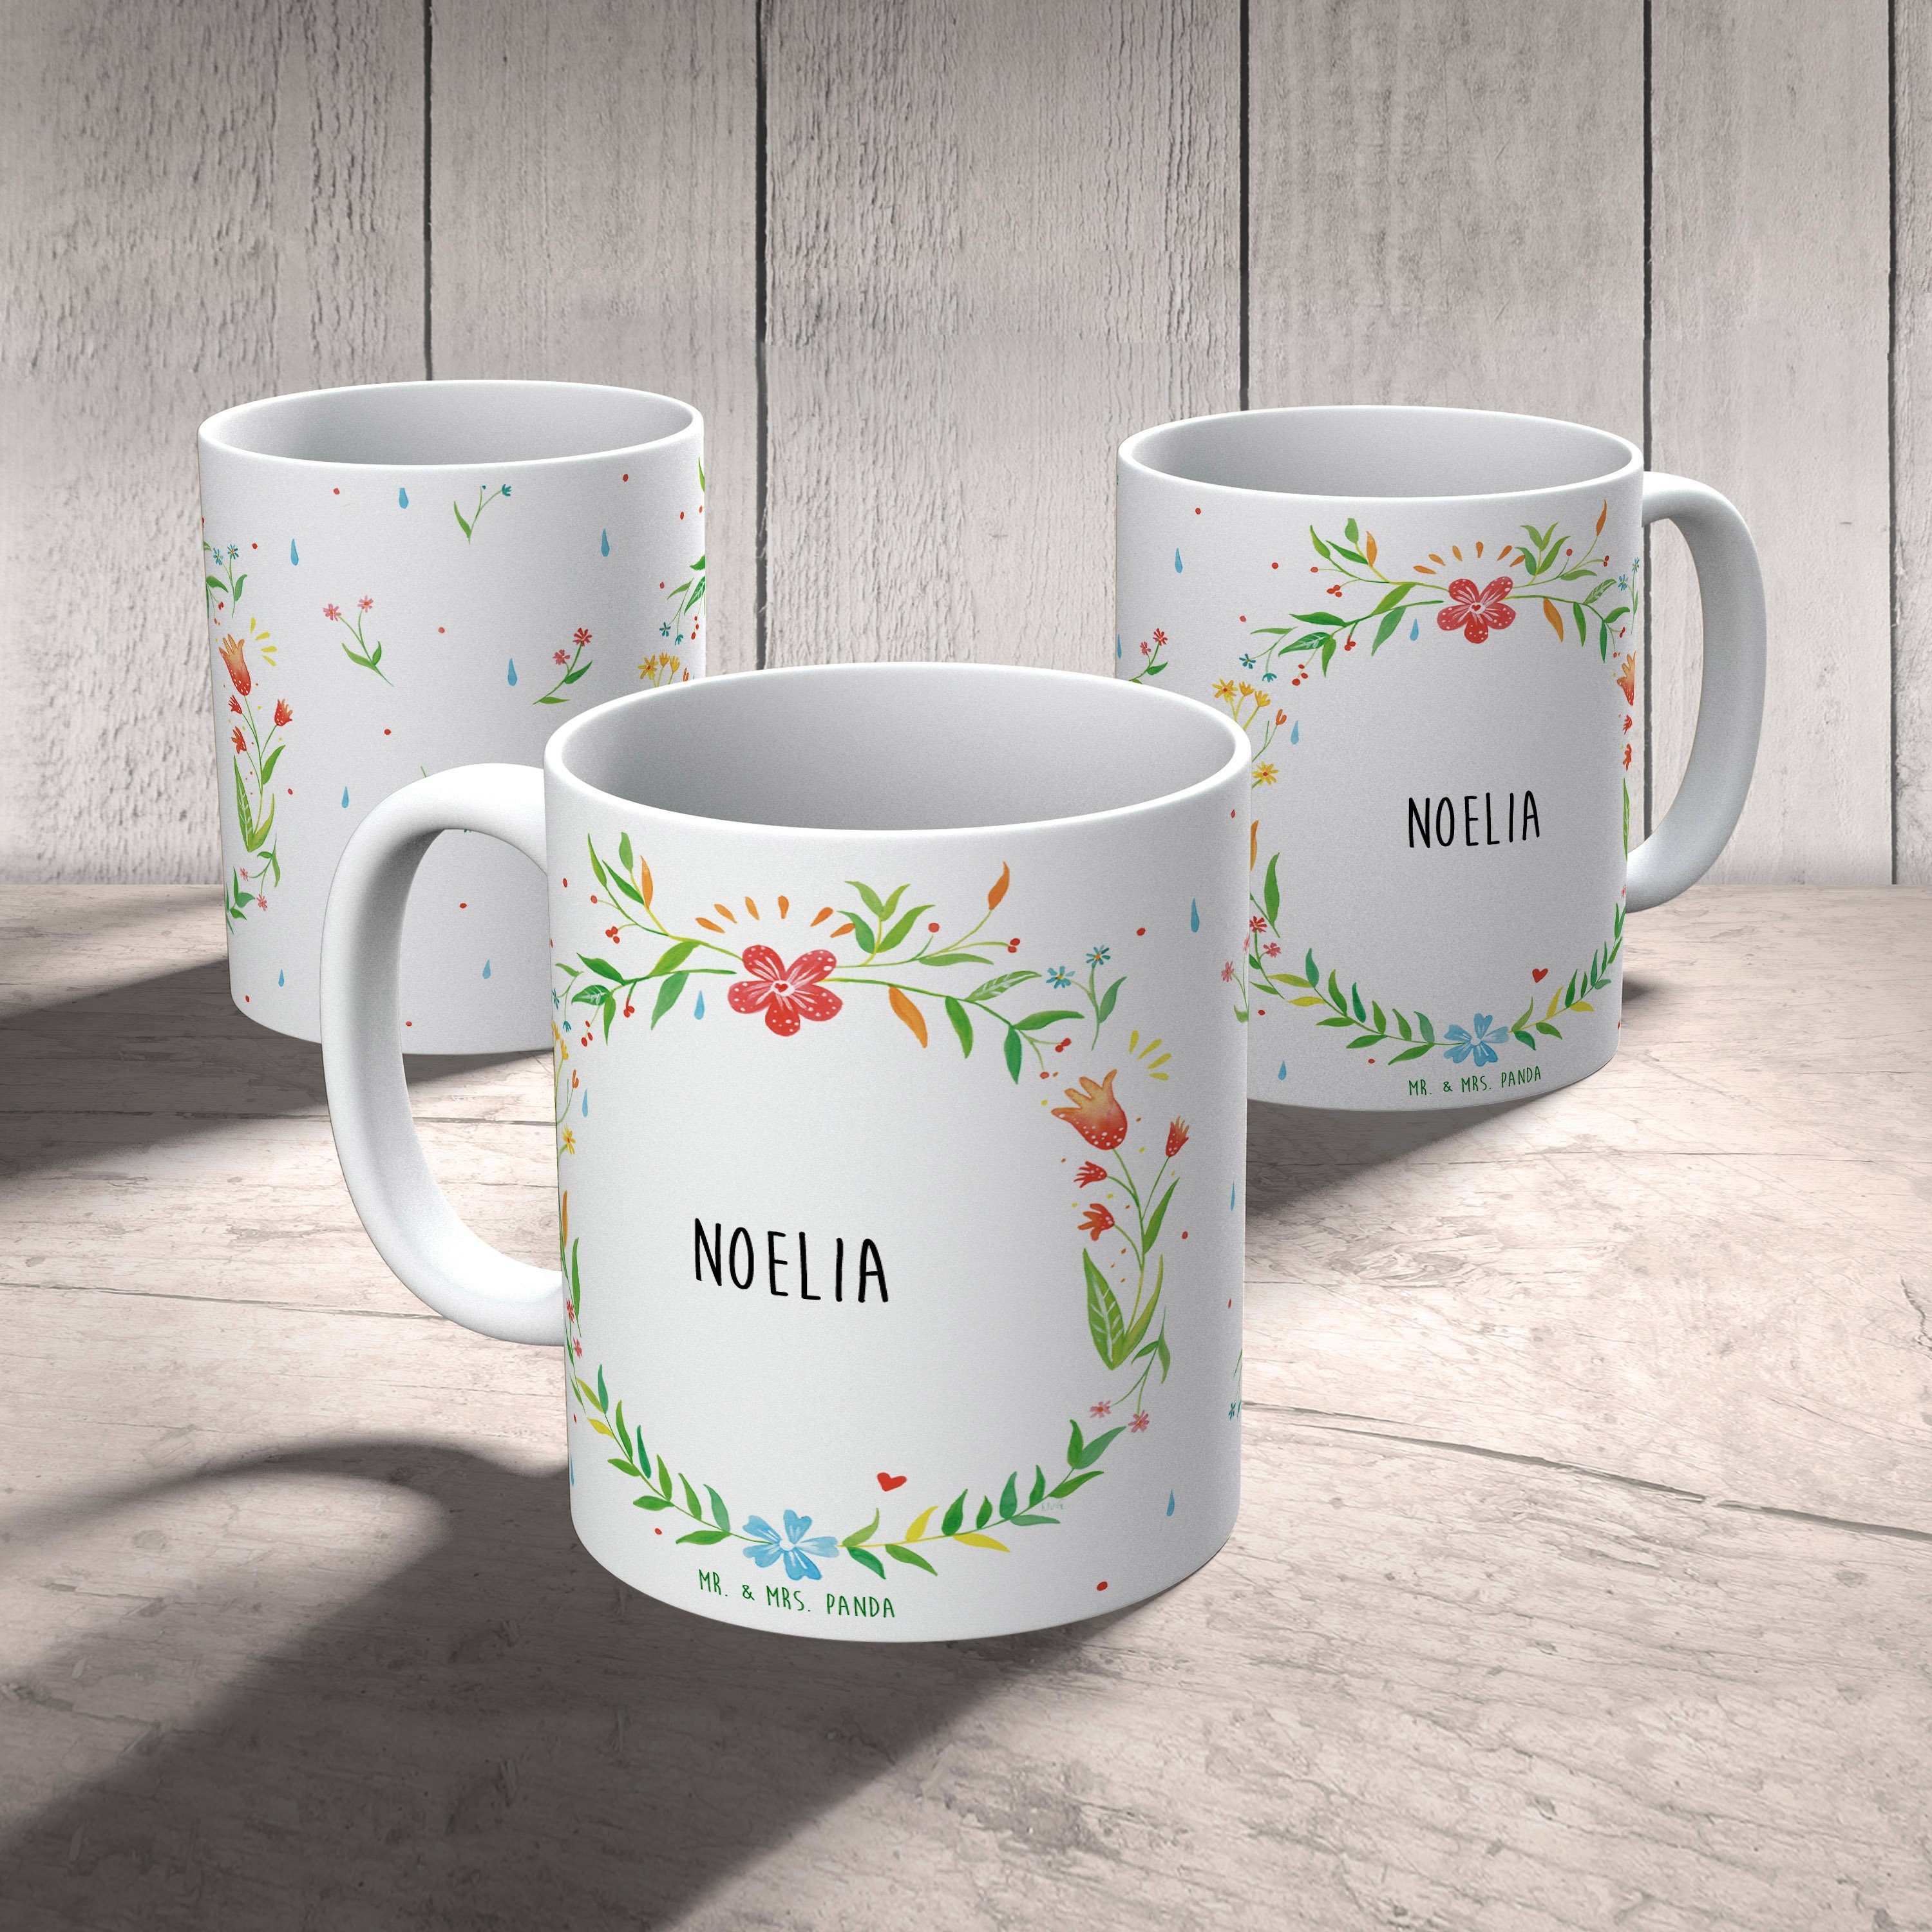 Mr. & Mrs. Panda - Kaffeebecher, Geschenk, Tasse, Tasse Keramik Teebec, Teetasse, Noelia Kaffeetasse